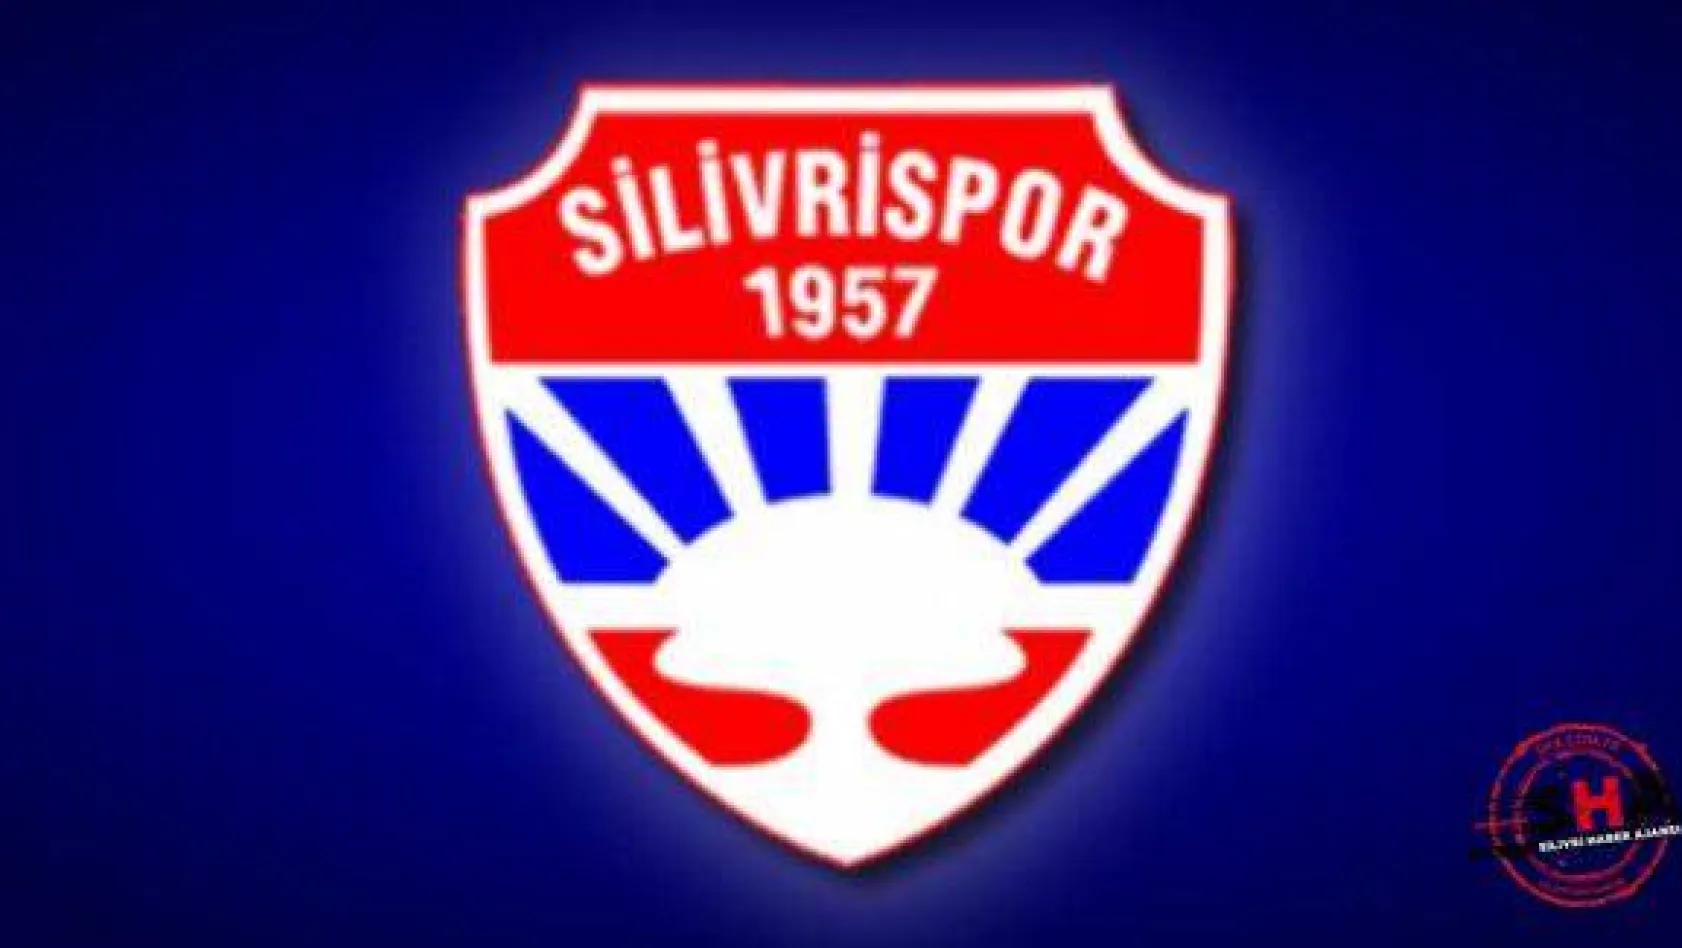 Yönetim, Silivrispor'un Gerçek Borcunu Açıkladı